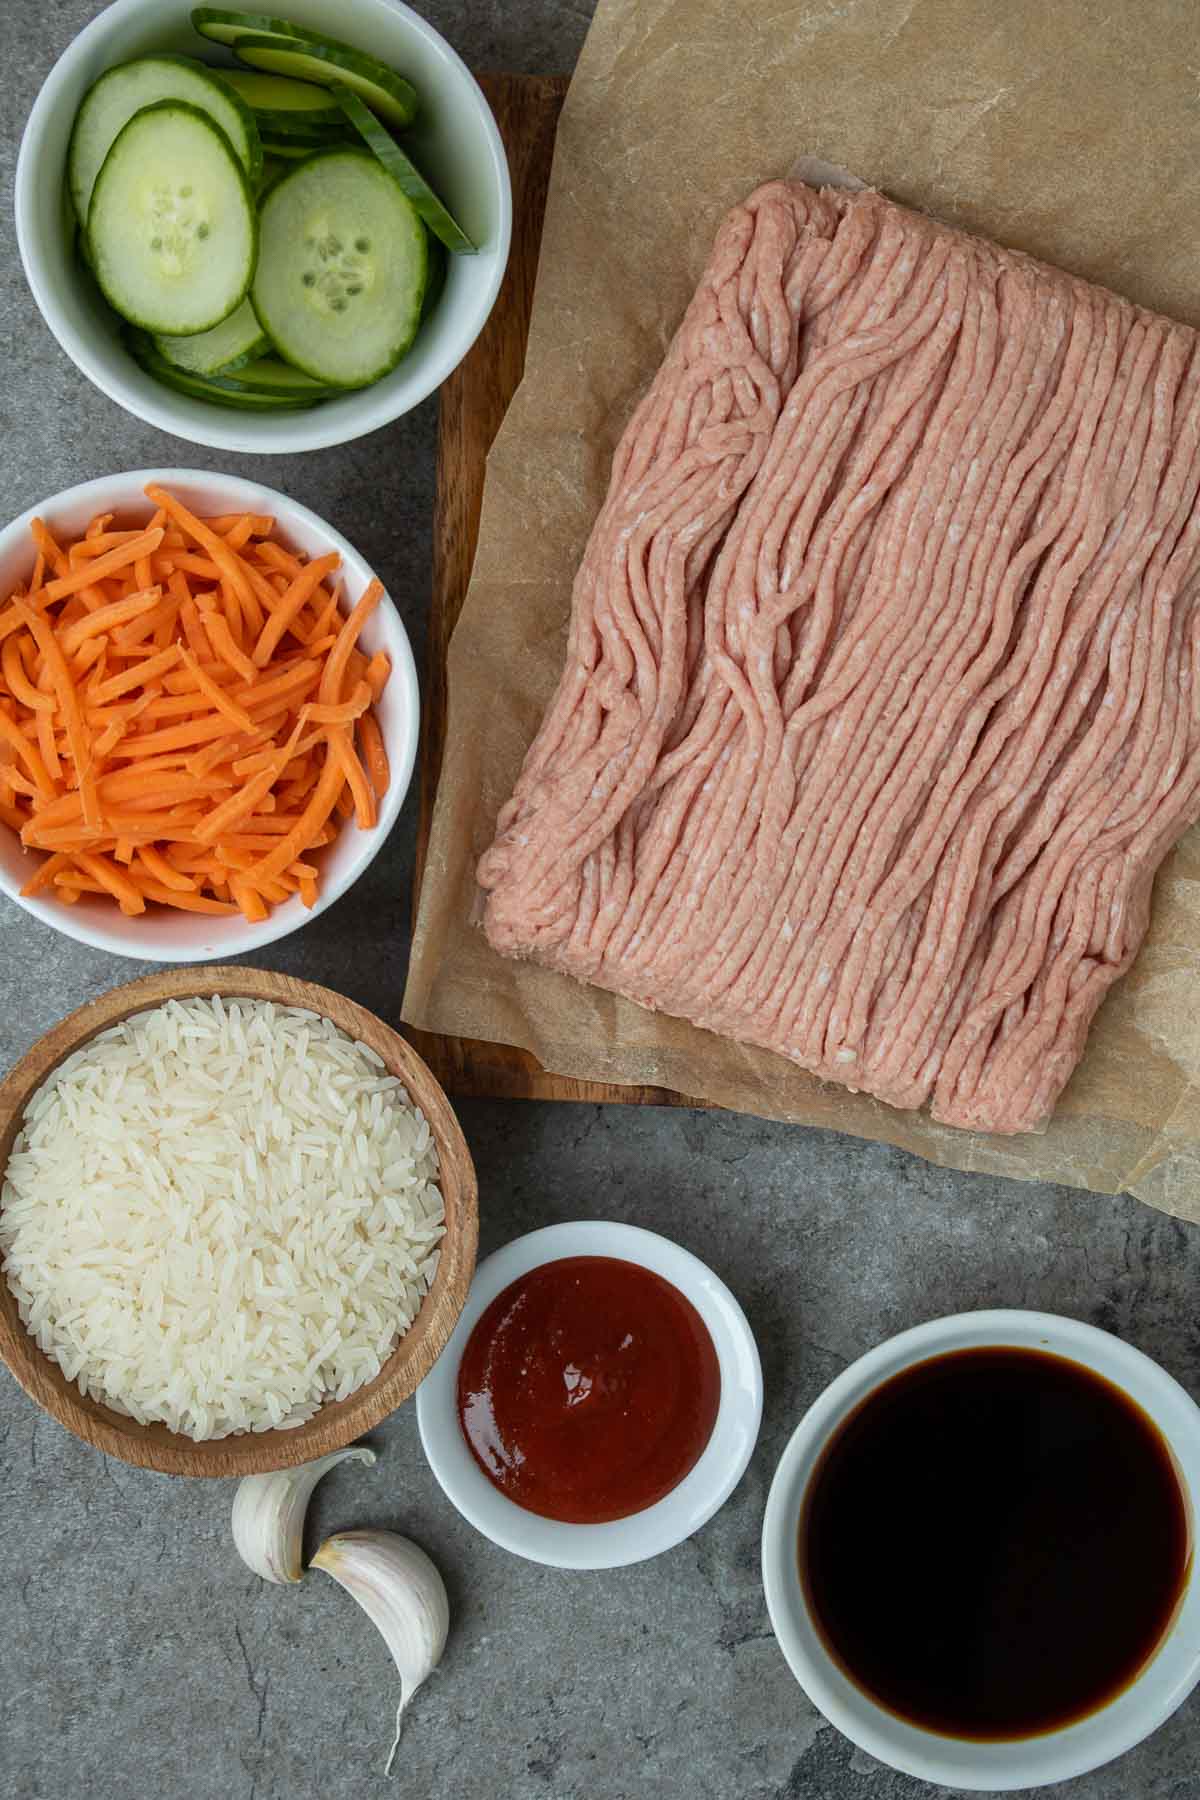 Ingrédients pour la recette de bols de riz à la dinde hachée coréenne ; dinde hachée, sauce soja, gochujang, ail, riz, carottes râpées et concombre tranché.